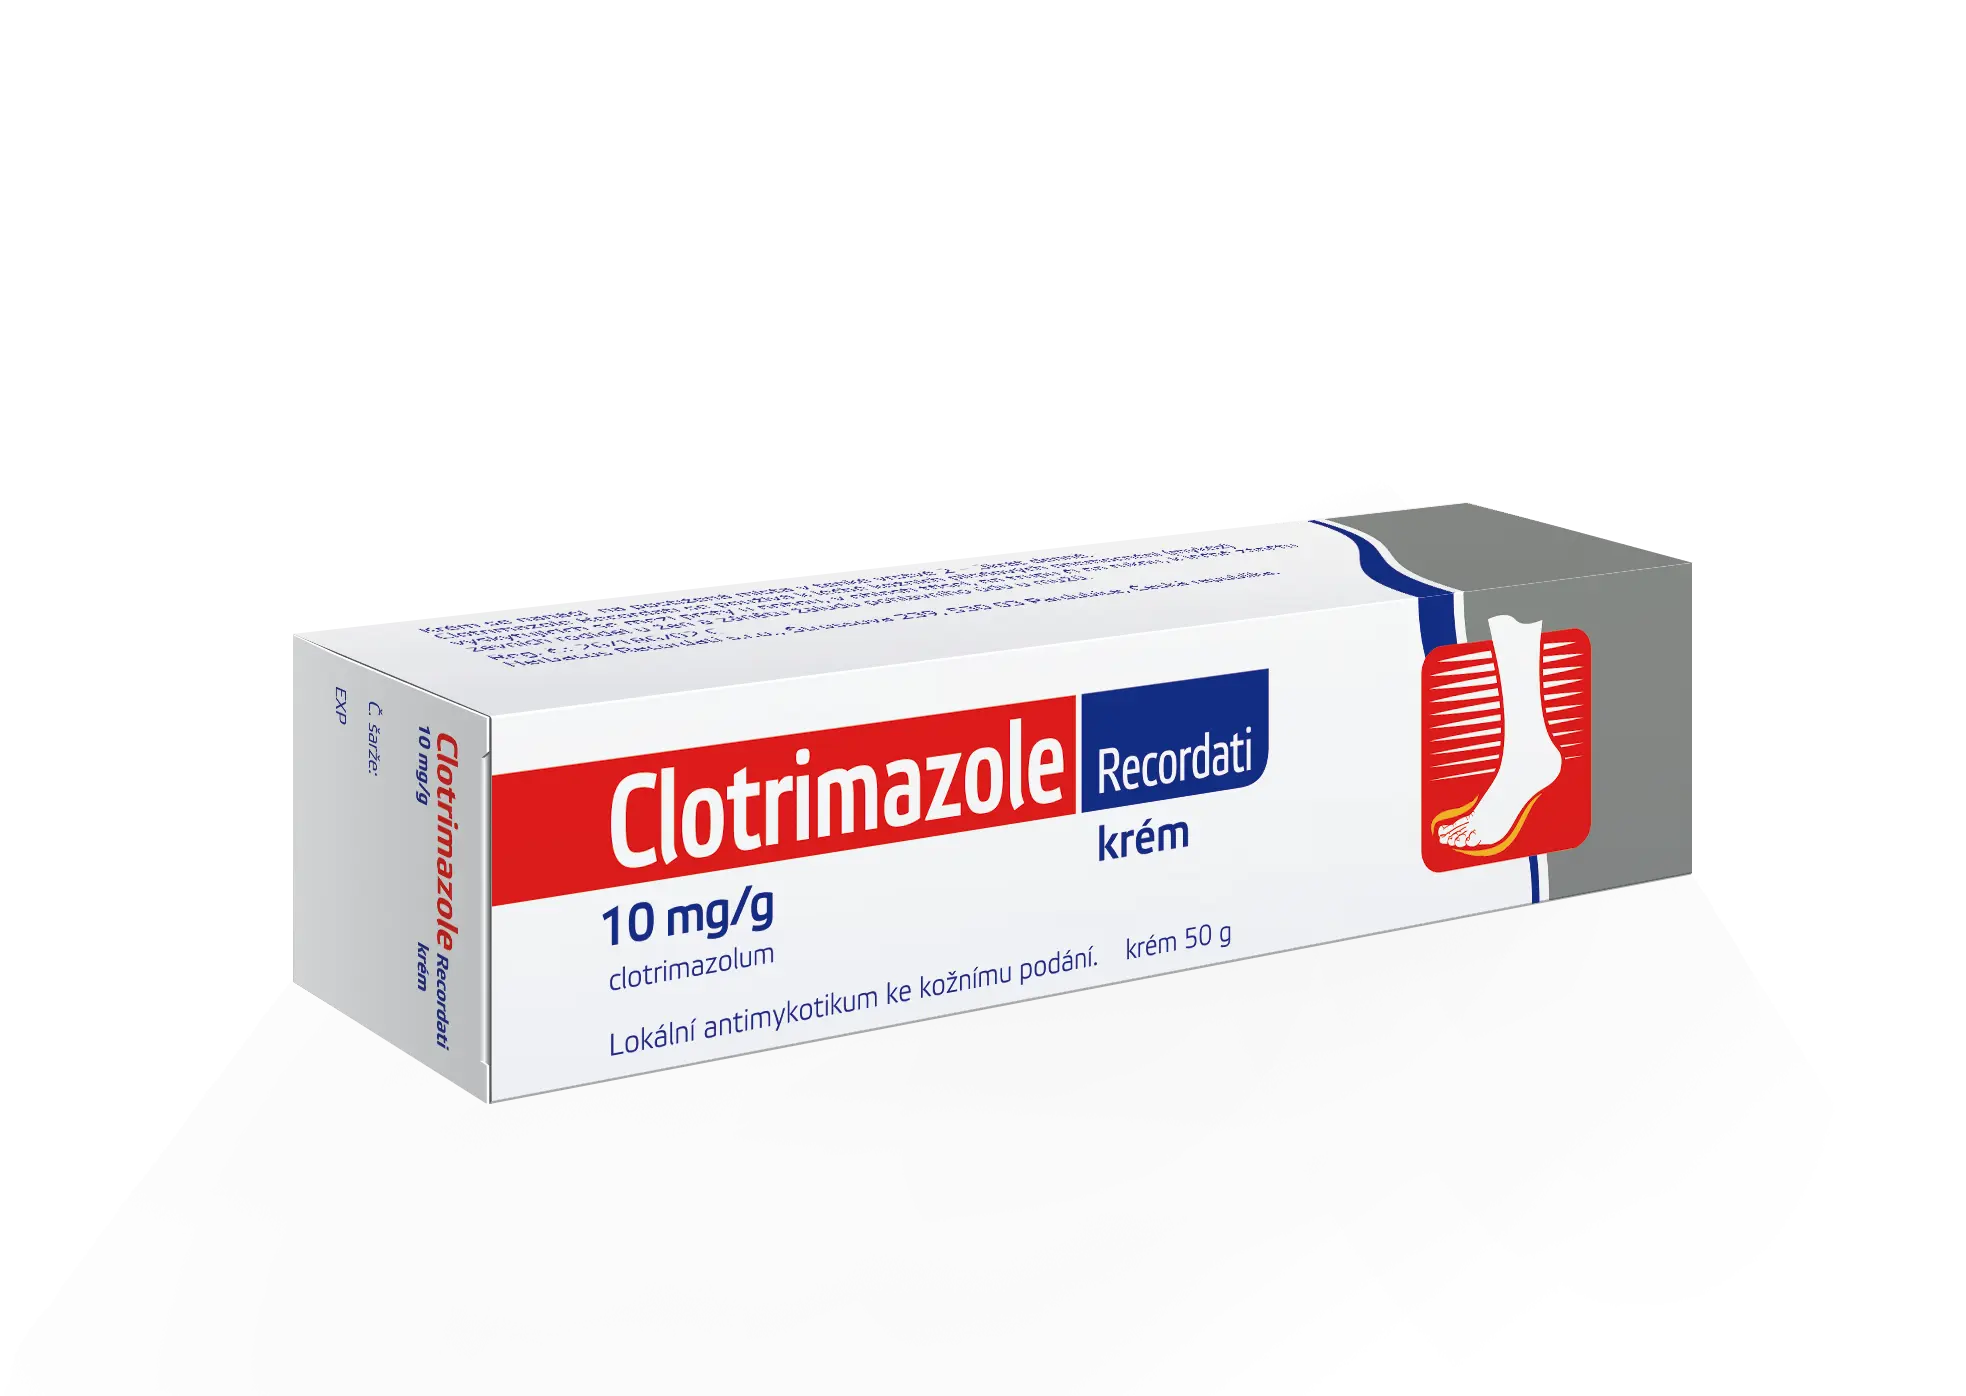 Clotrimazol HBF drm.crm. 1 x 50 g 1%